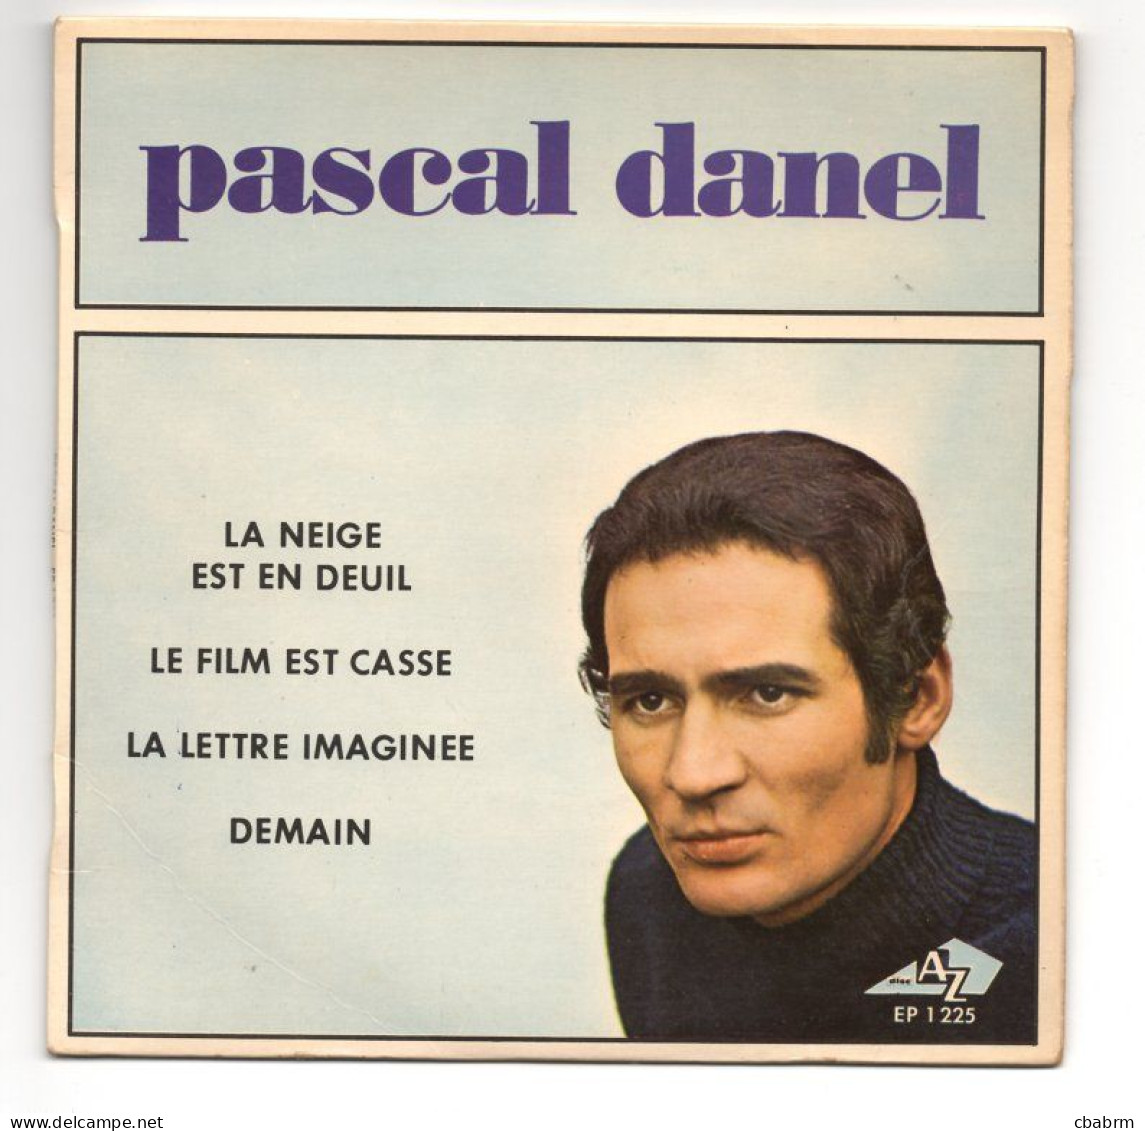 EP 45 TOURS PASCAL DANEL LA NEIGE EST EN DEUIL 1968 FRANCE Disc'Az ‎ EP 1225 - Sonstige - Franz. Chansons